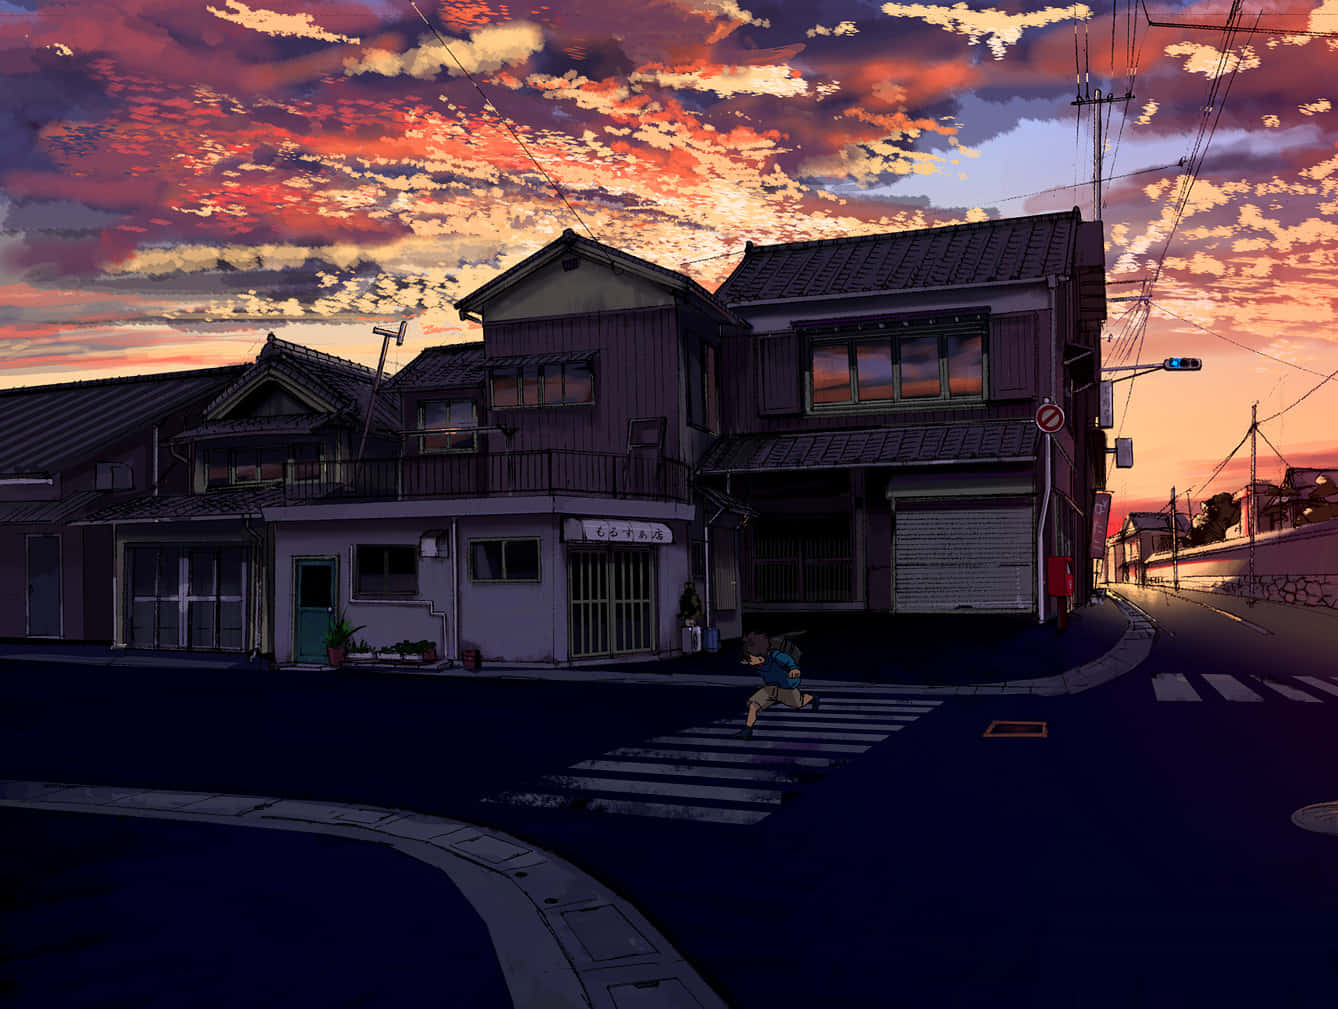 Animesilhouette Degli Edifici Sullo Sfondo Di Nuvole Pastello. Sfondo